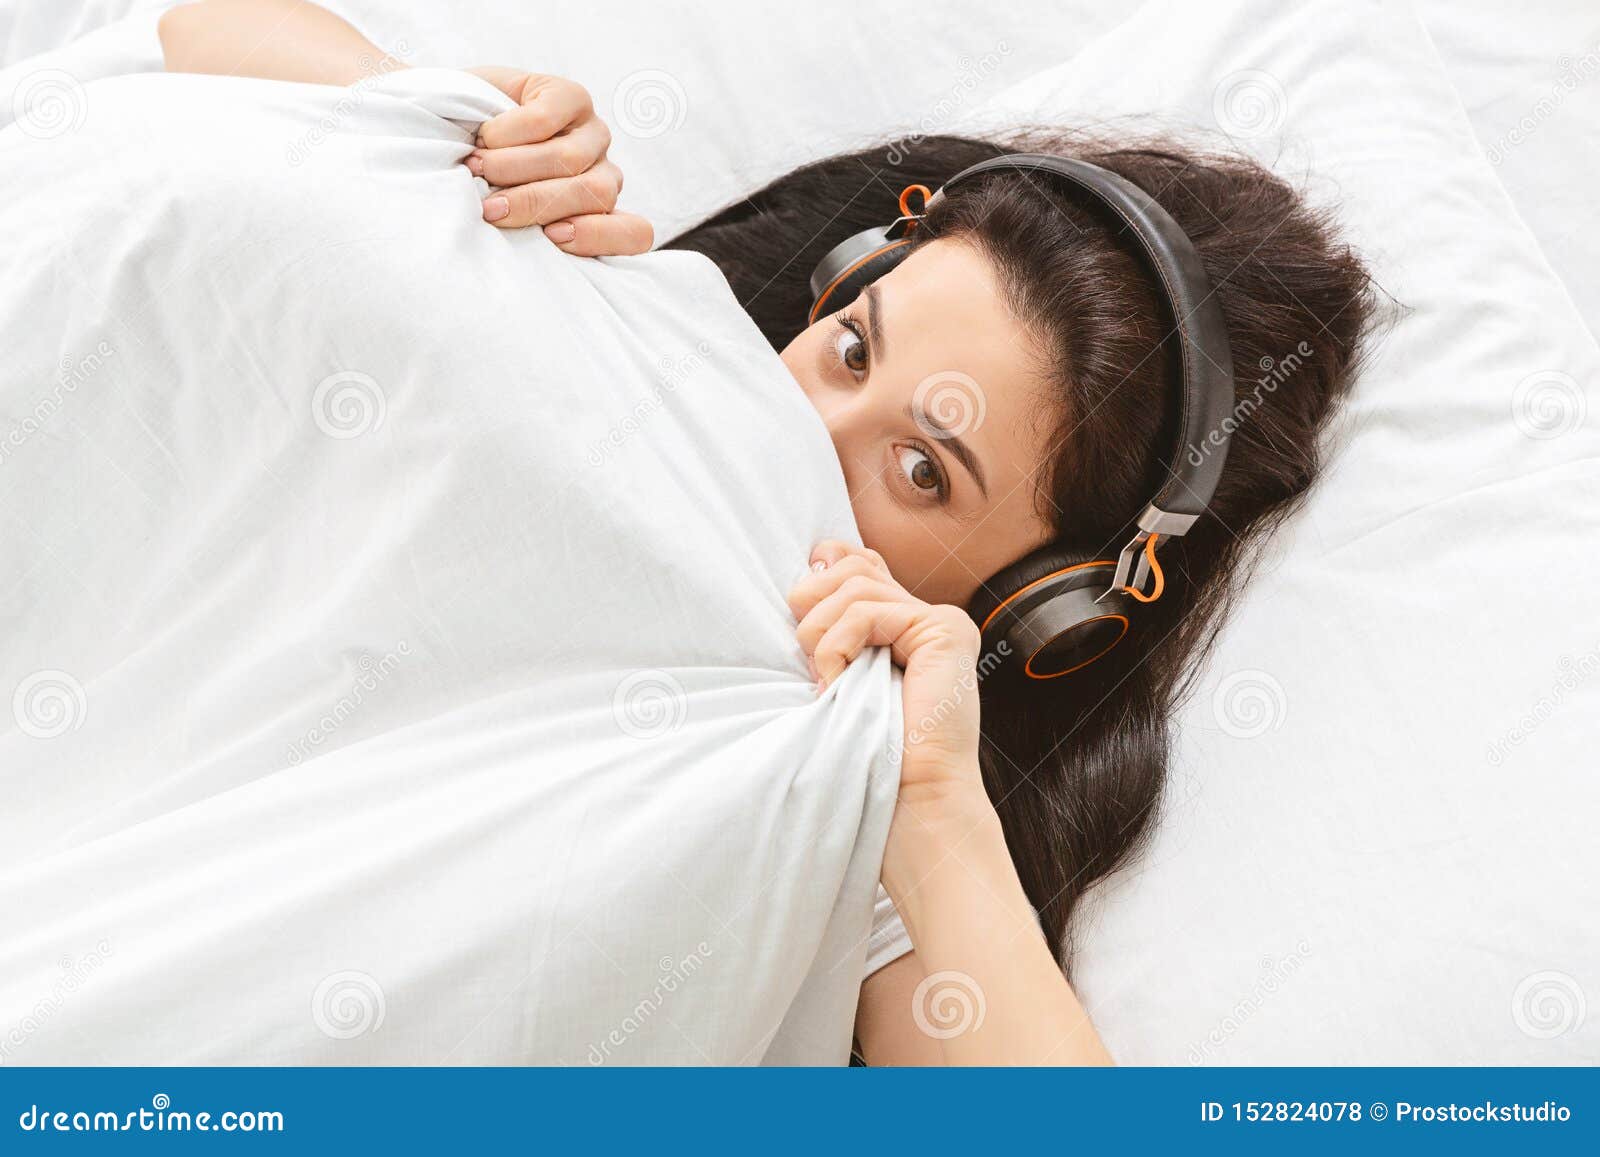 Ослабьте время Шаловливая девушка в наушниках пряча под одеялом, слушая музыку в наушниках, открытый космос